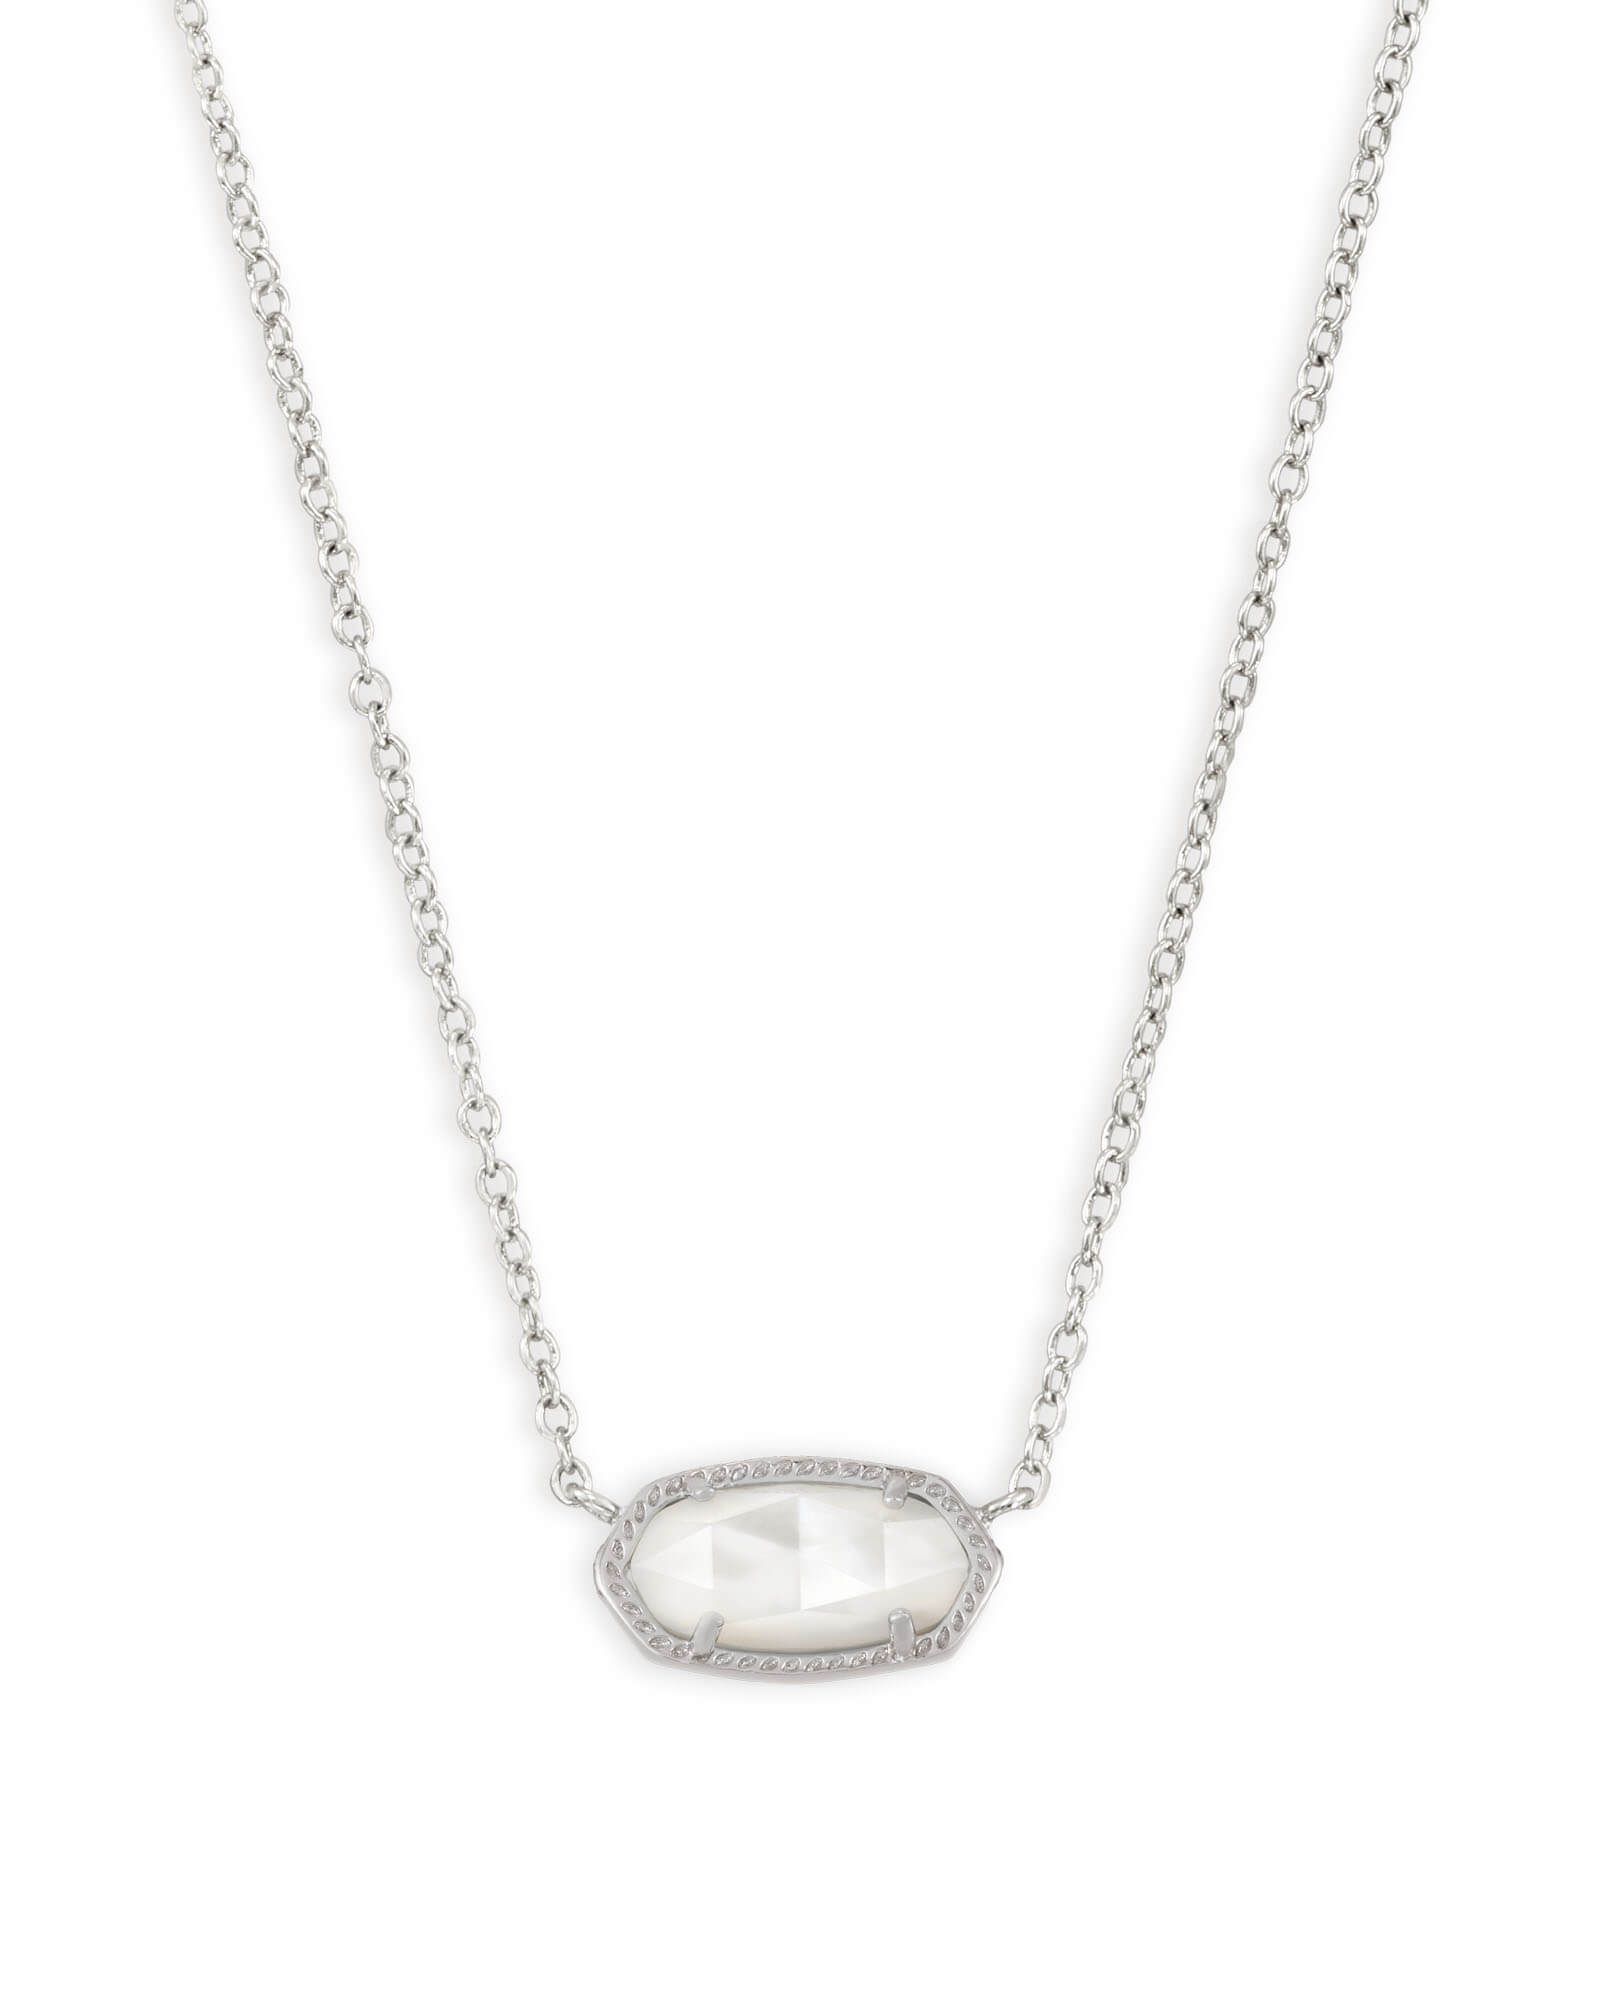 Elisa Silver Pendant Necklace in Amethyst | Kendra Scott